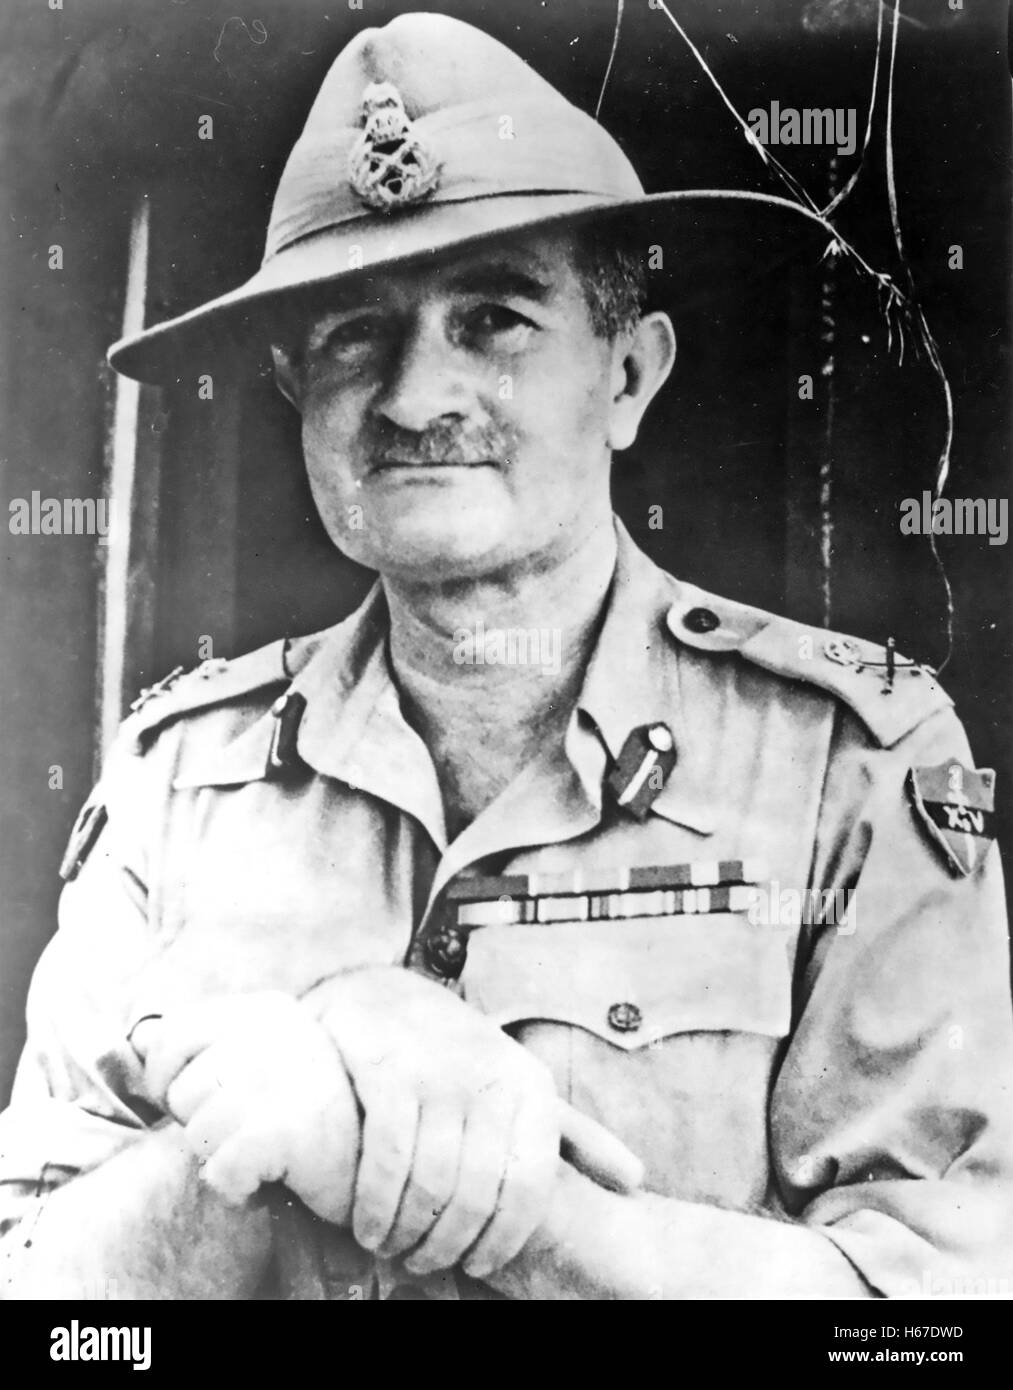 WILLIAM SLIM, der britische Offizier Ist Viscount Slim (1891-1970) über 1944 als Kommandeur der 14. Armee in Birma. Stockfoto